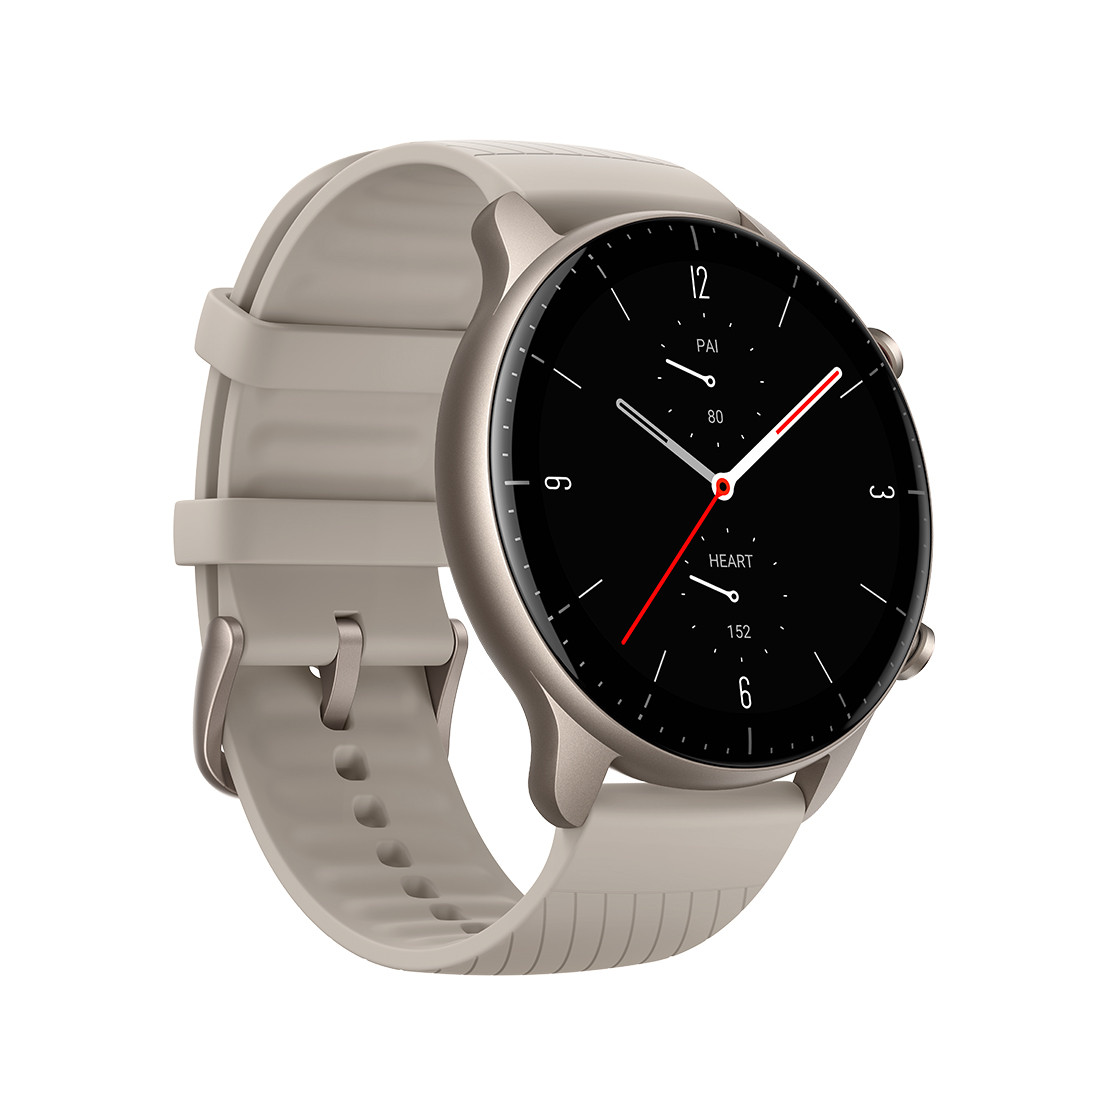 Смарт-часы, цвет Lightning Grey, новая версия, Amazfit GTR2 A1952, бренд Amazfit